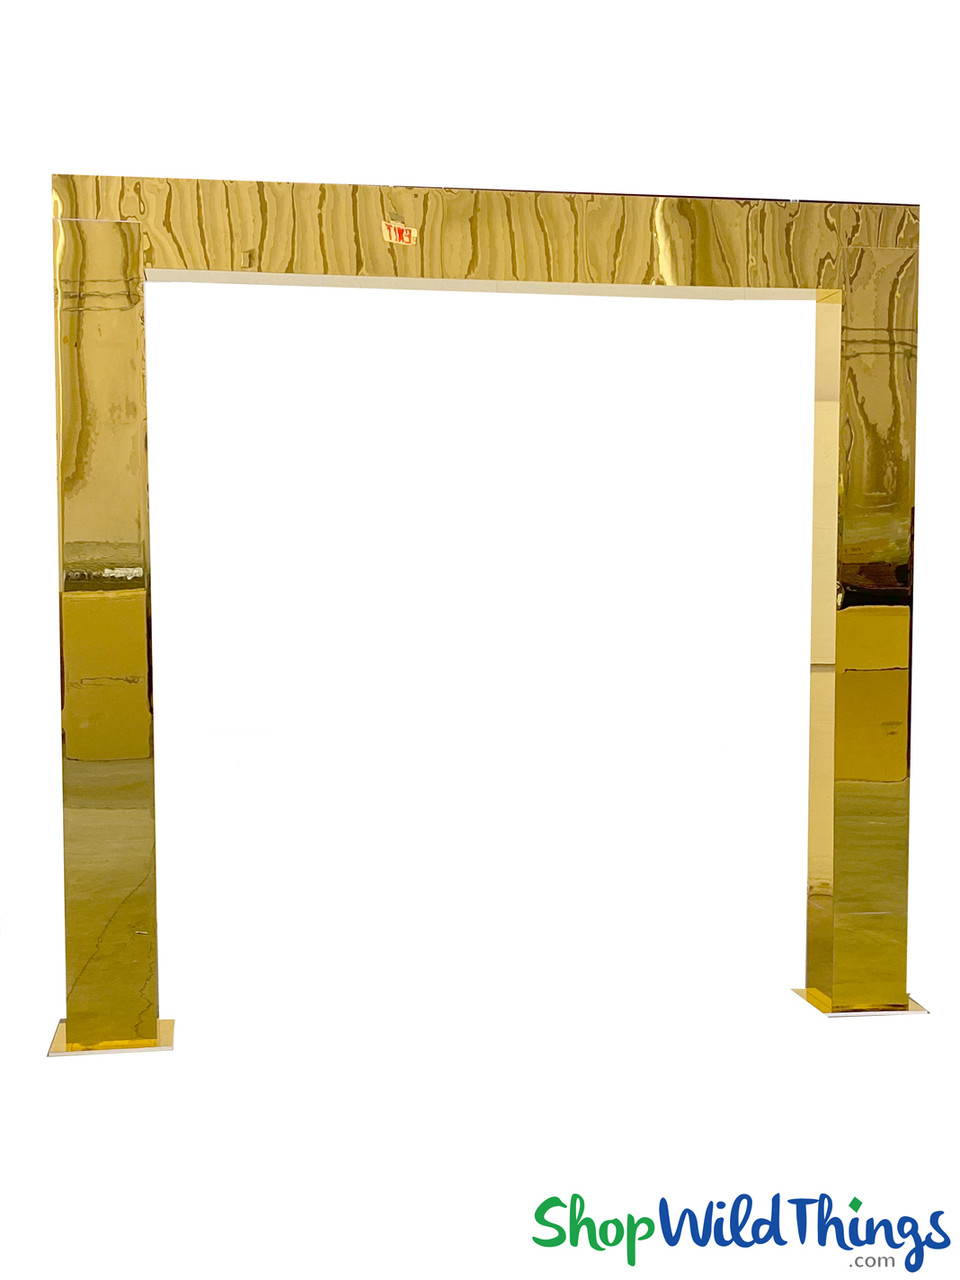 Wedding Centerpieces Gold Mirror Acrylic Columns Gold Mirror